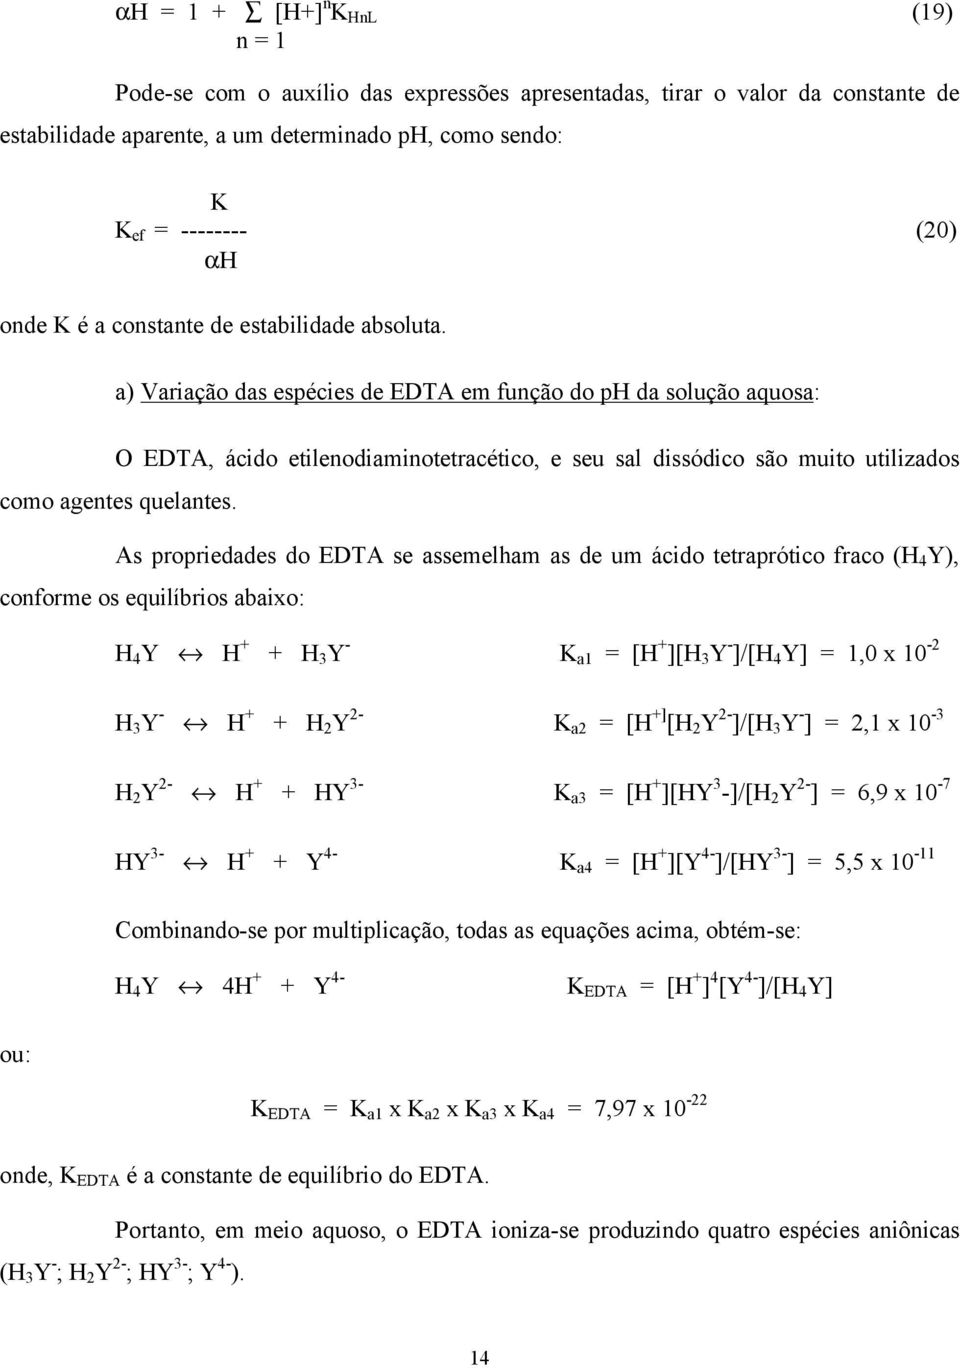 a) Variação das espécies de EDTA em função do ph da solução aquosa: O EDTA, ácido etilenodiaminotetracético, e seu sal dissódico são muito utilizados como agentes quelantes.